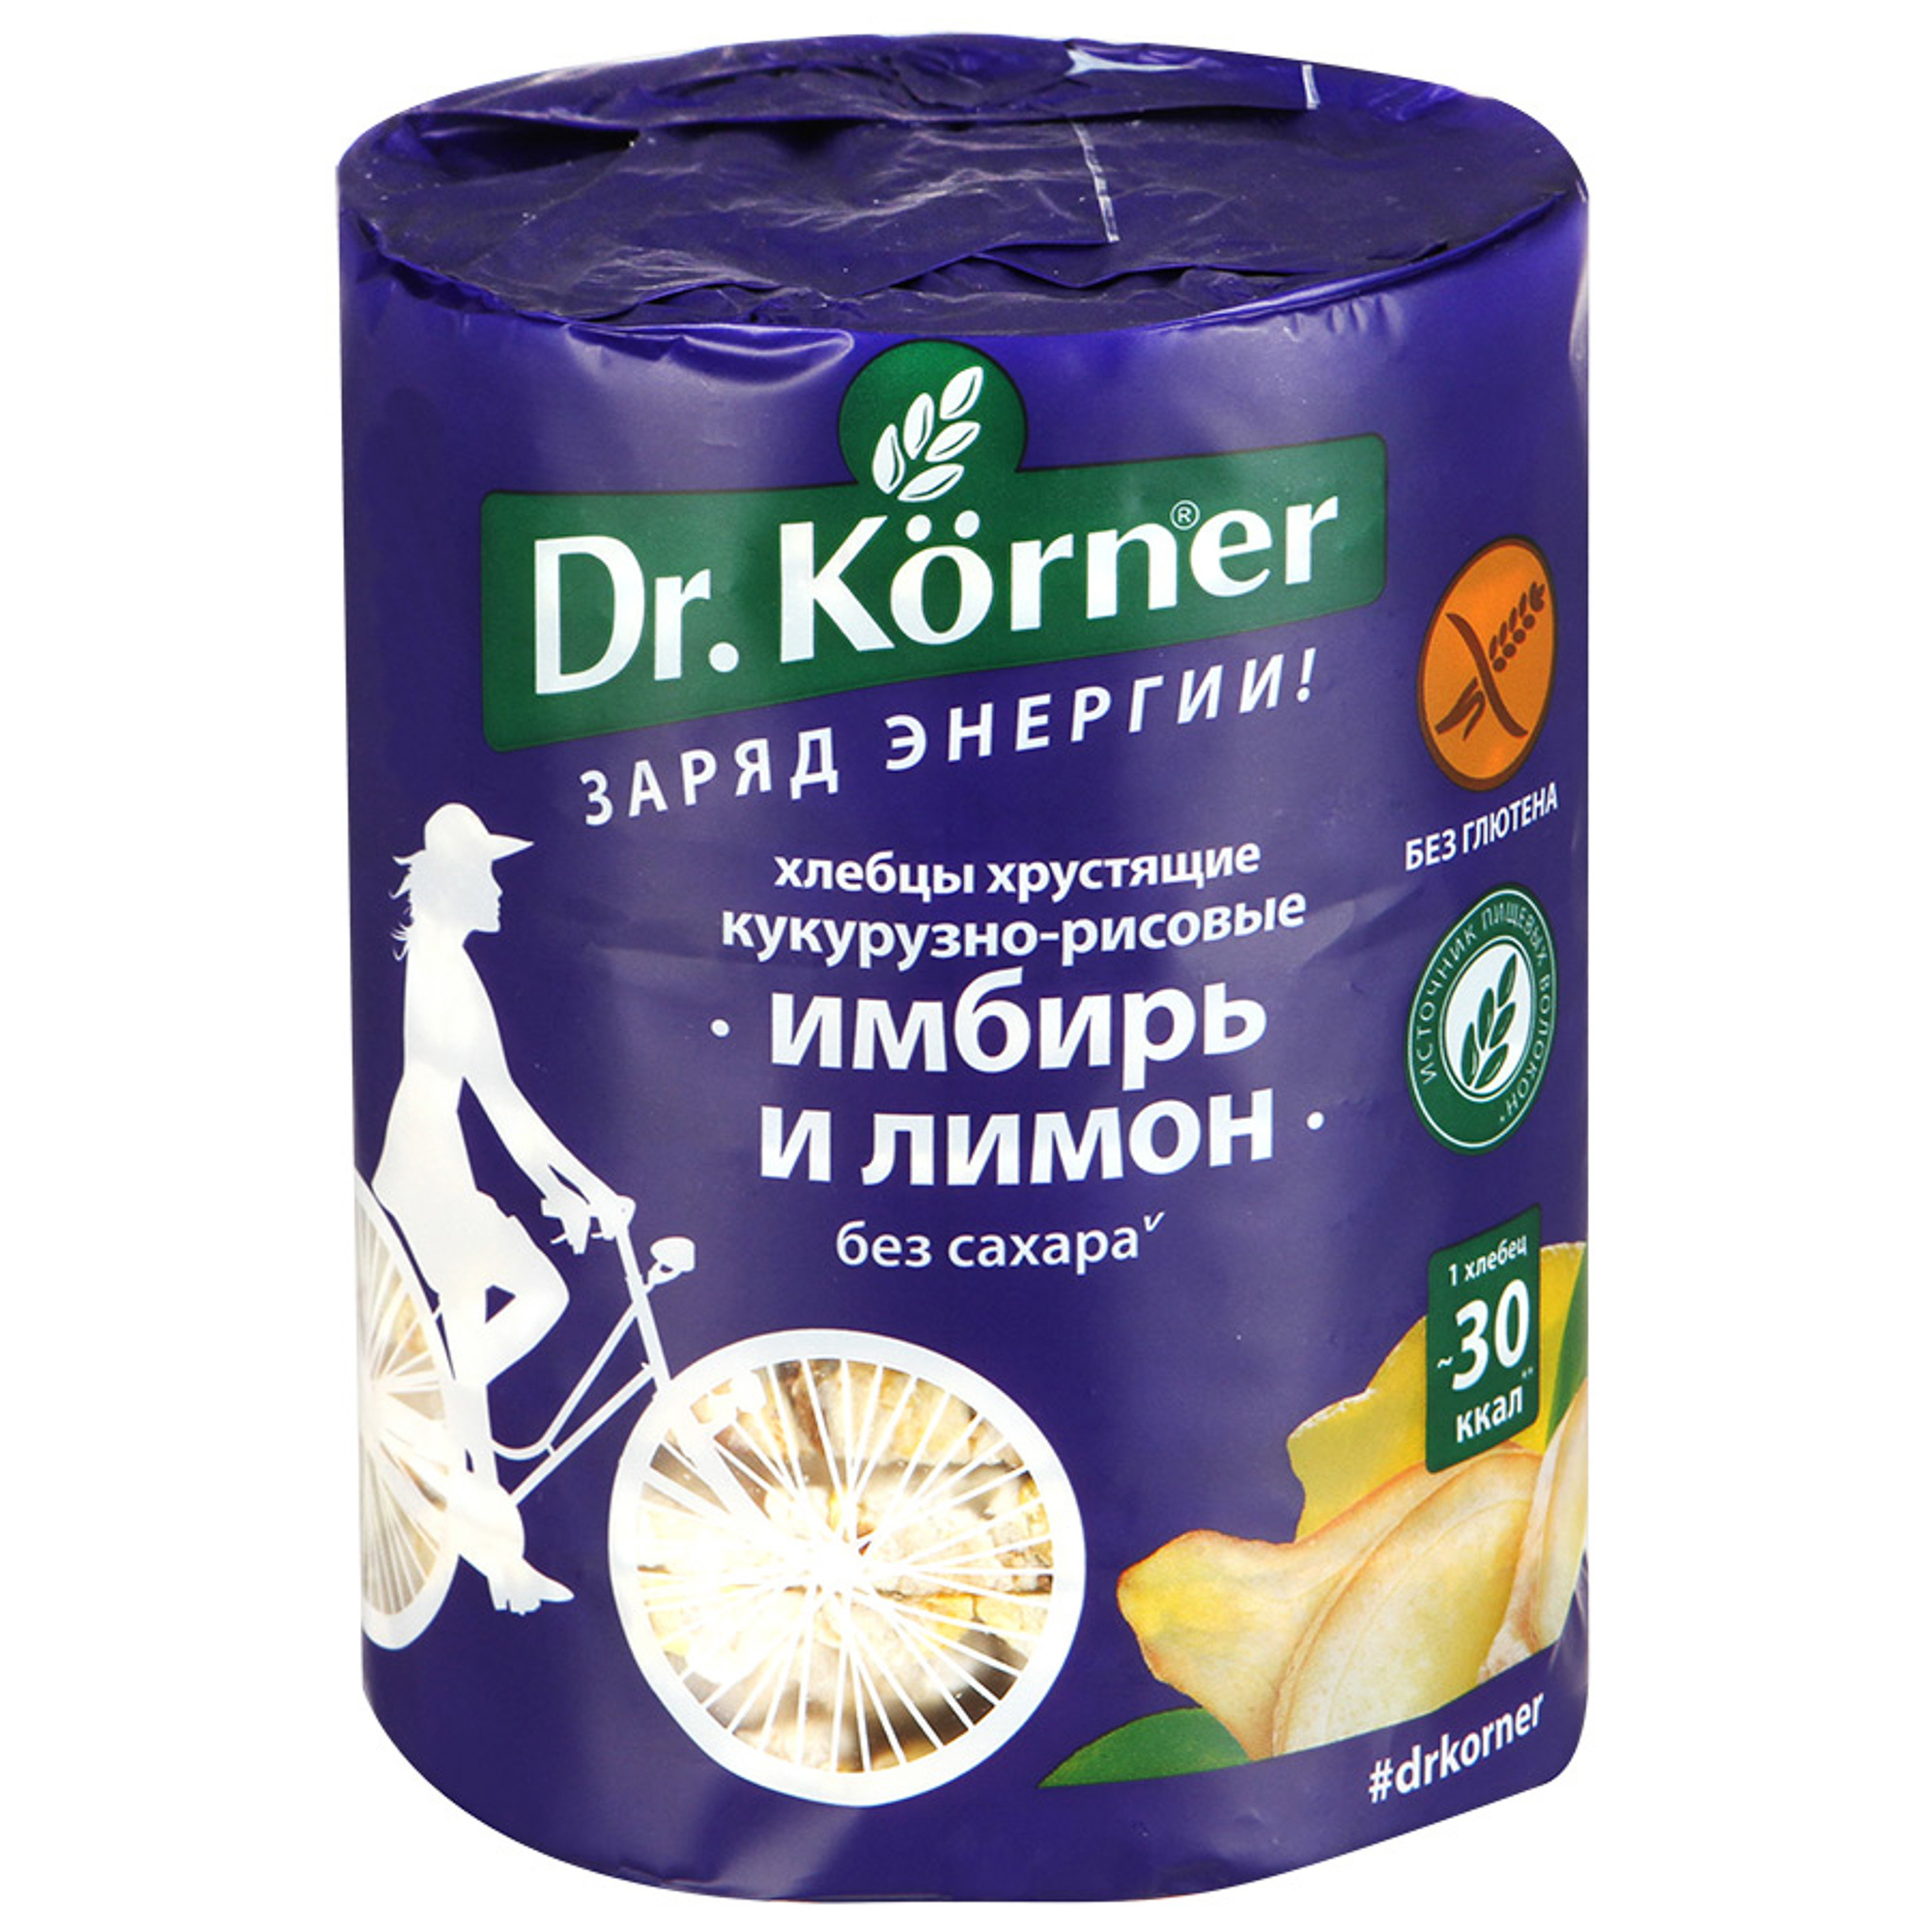 Хлебцы хрустящие Dr. Korner Кукурузно-рисовые с имбирем и лимоном 90 г хлебцы dr korner кукурузно рисовые карамельные 90 гр